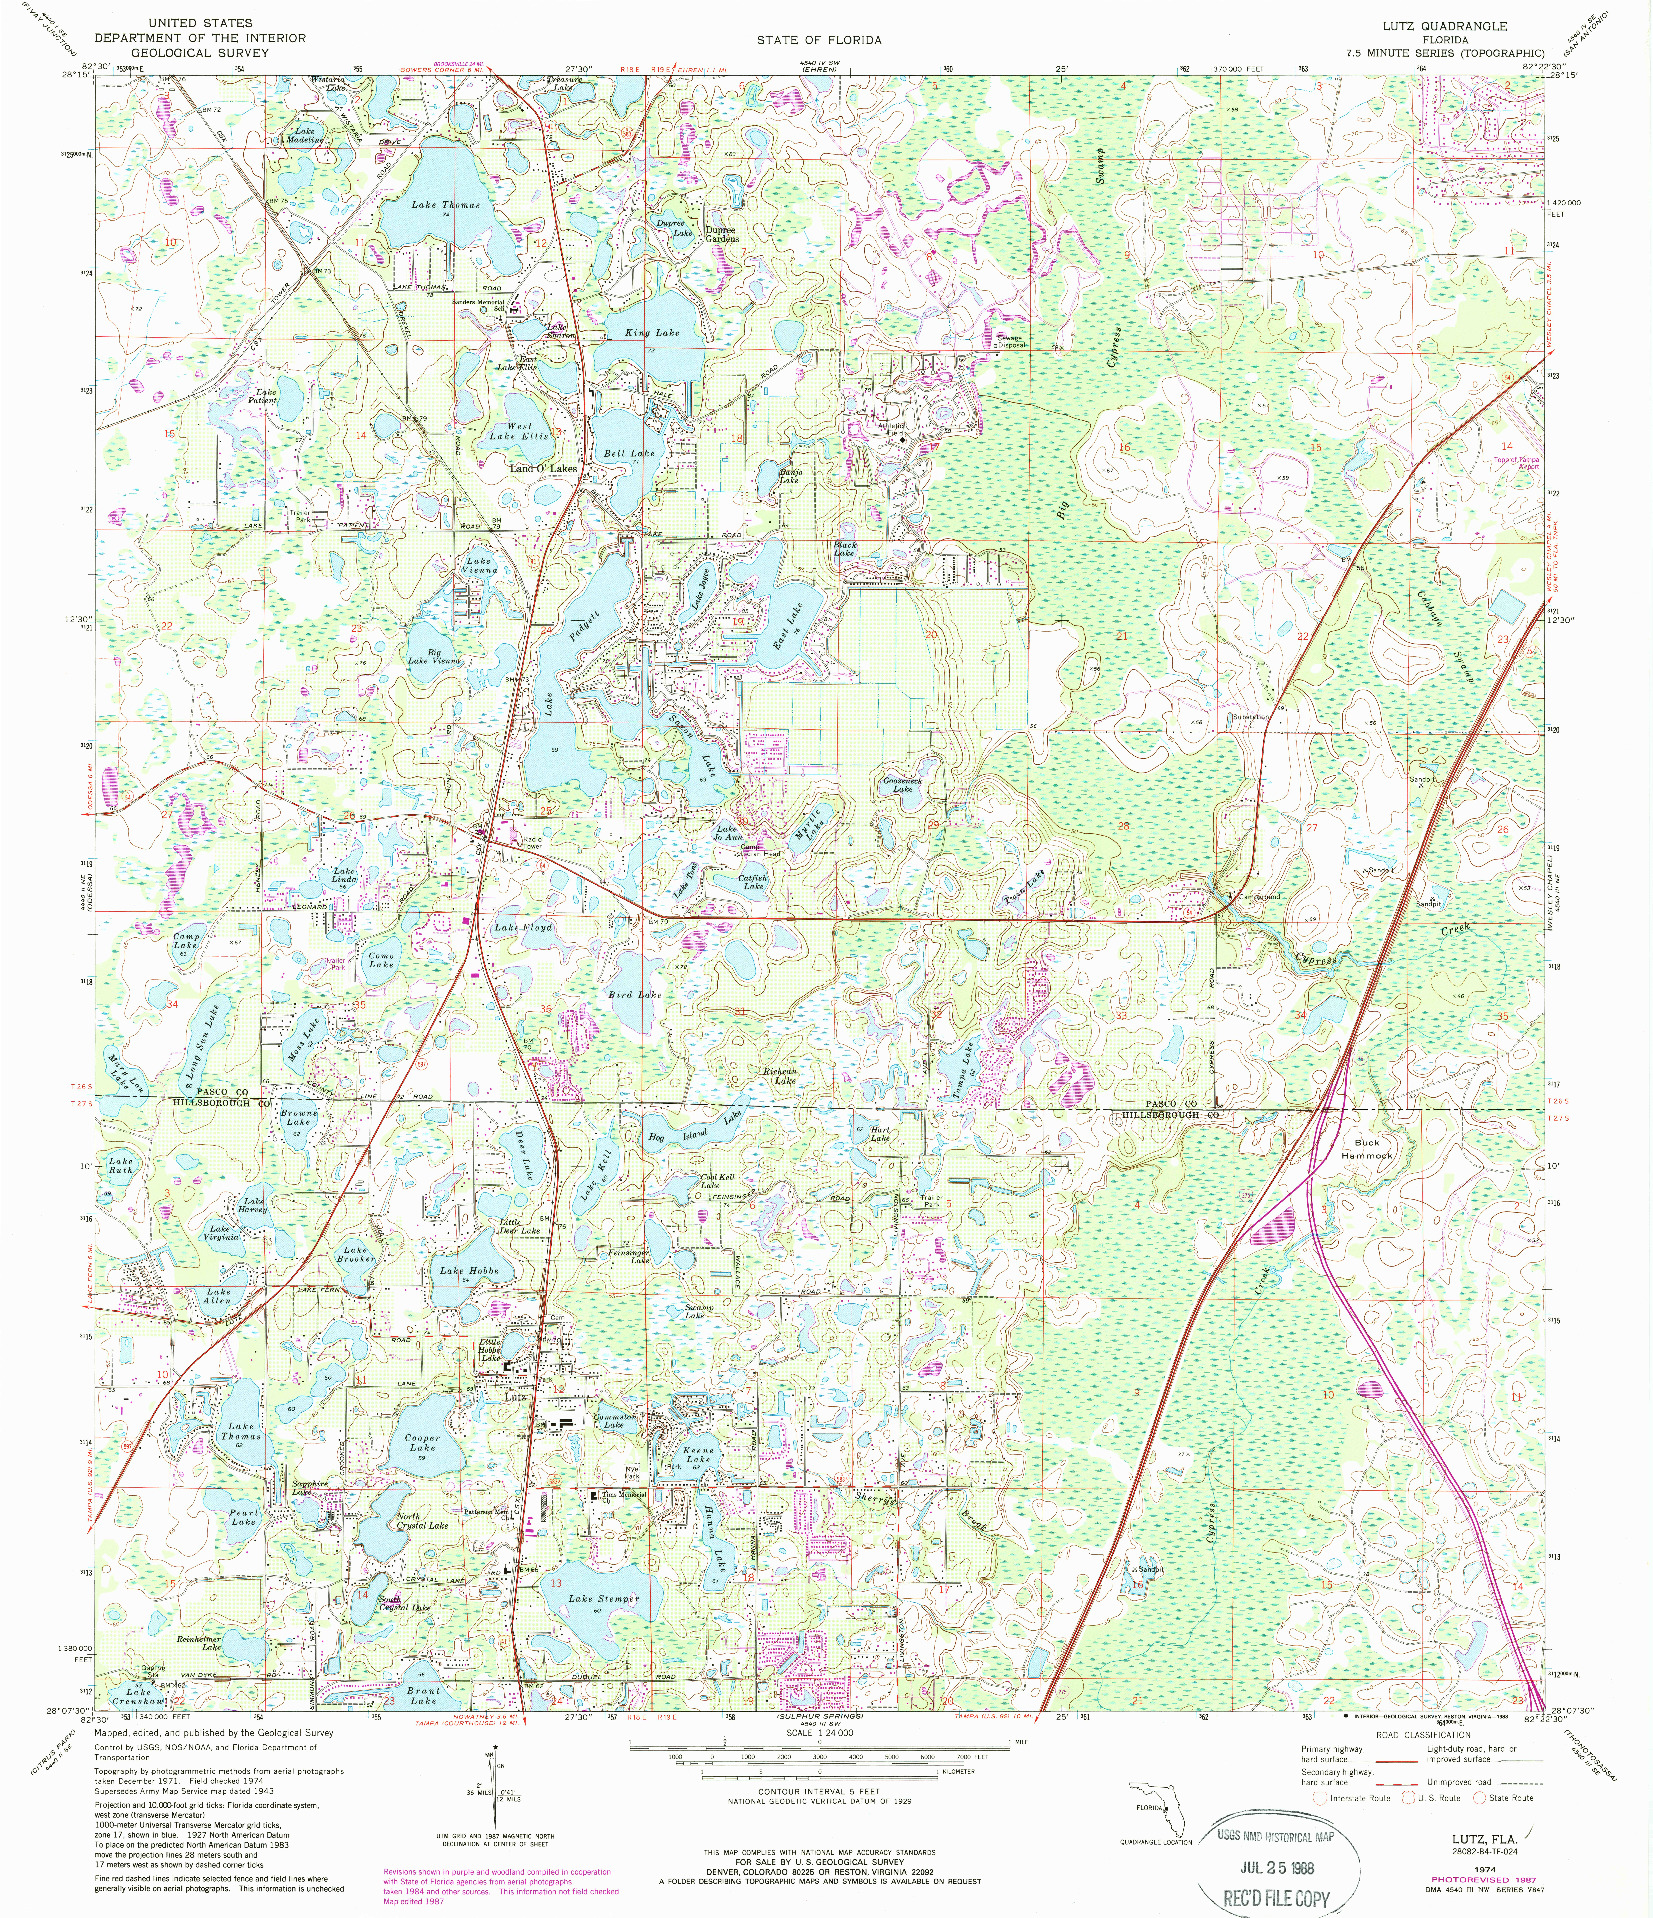 USGS 1:24000-SCALE QUADRANGLE FOR LUTZ, FL 1974